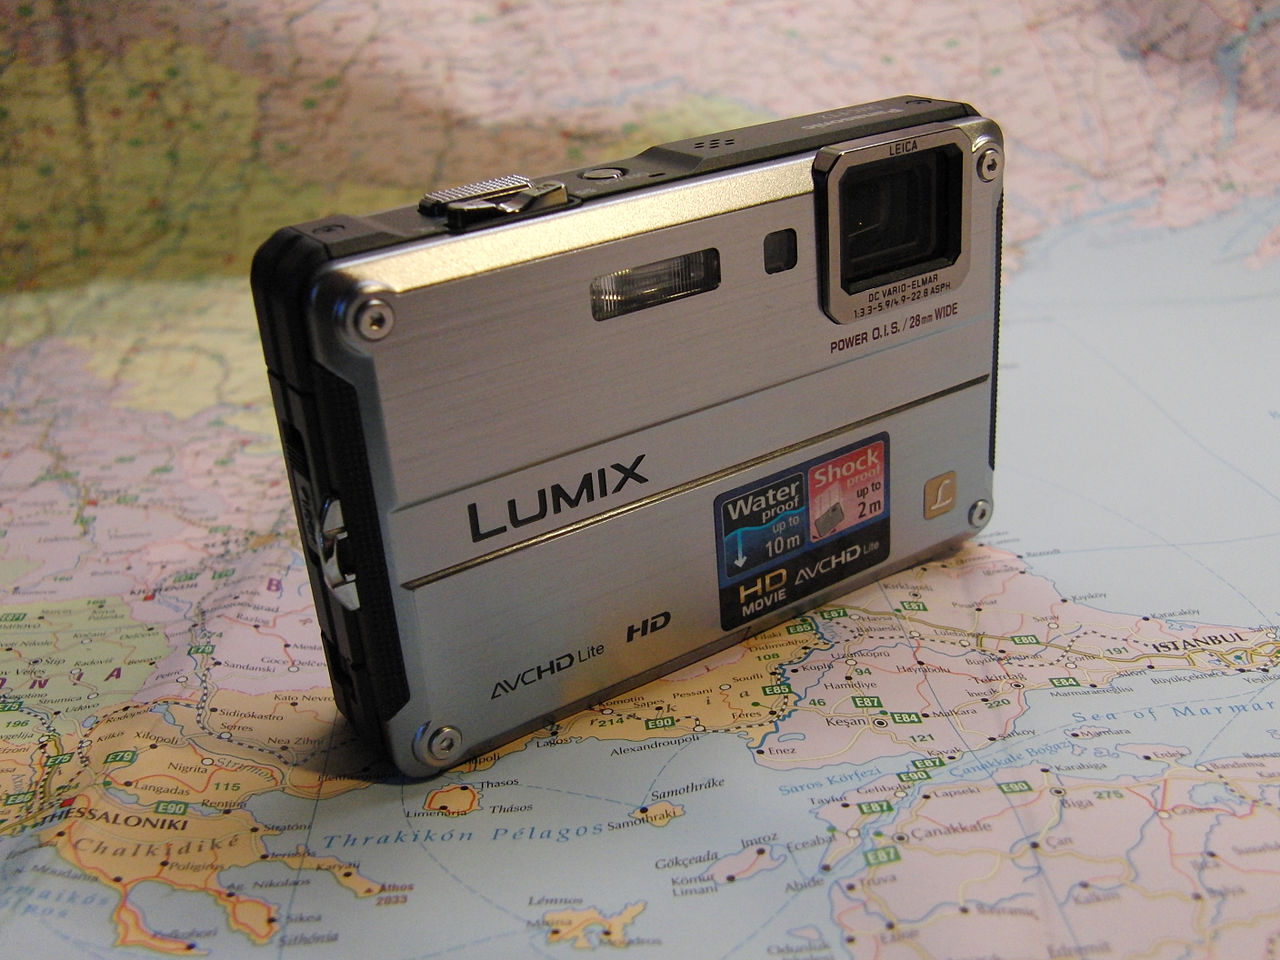 File:Panasonic Lumix DMC-FT2 (4865875720).jpg - Wikimedia